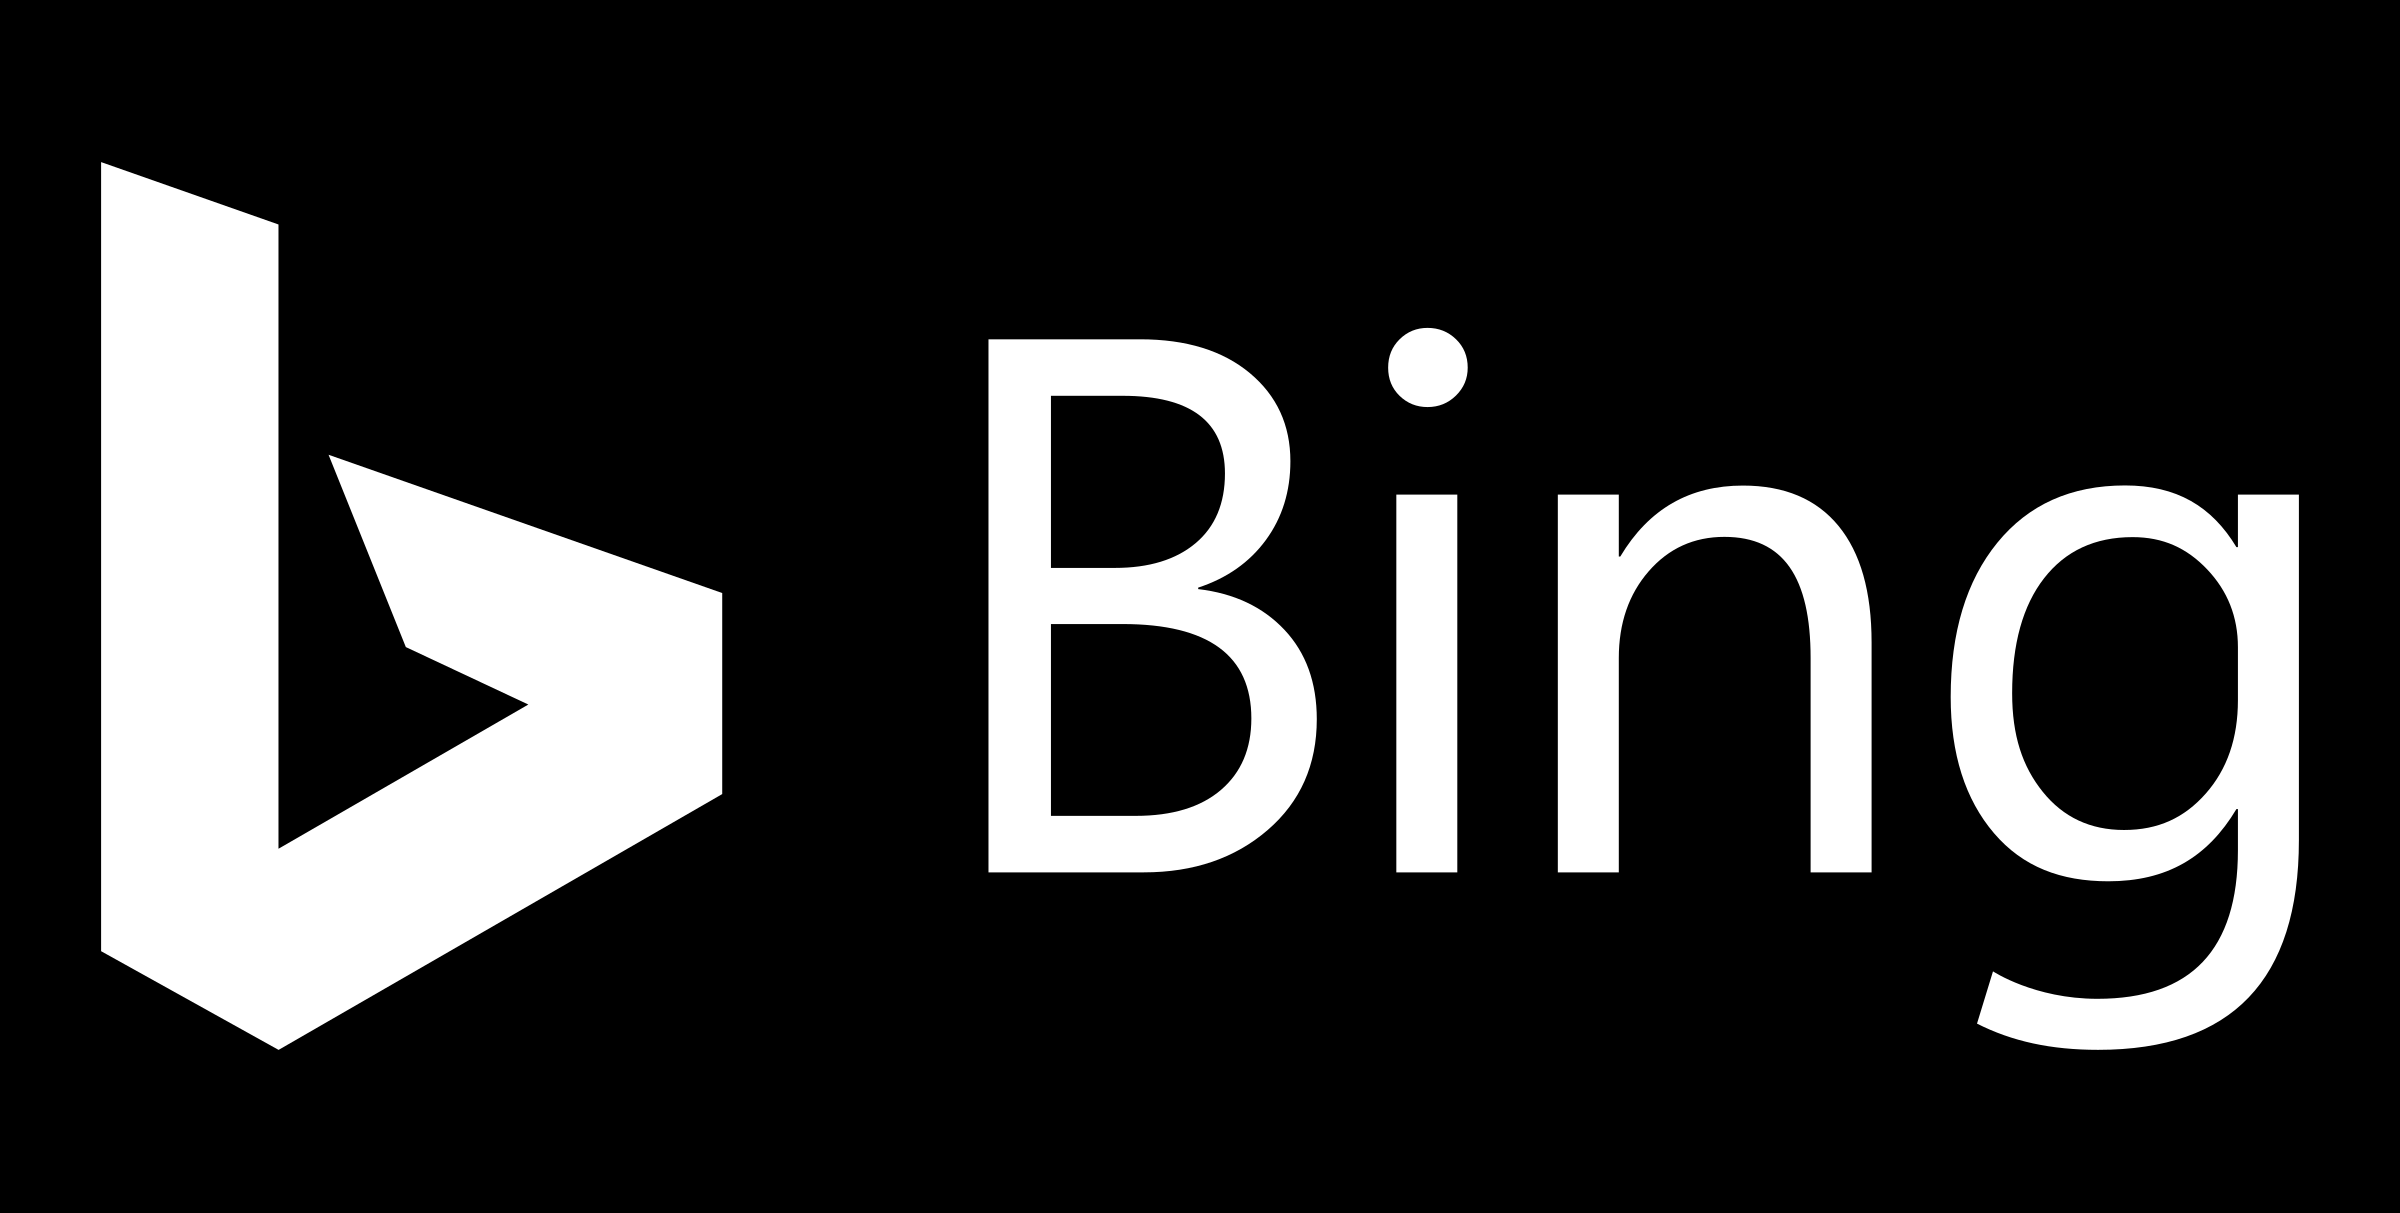 Filename: Bing-logo.png - Log